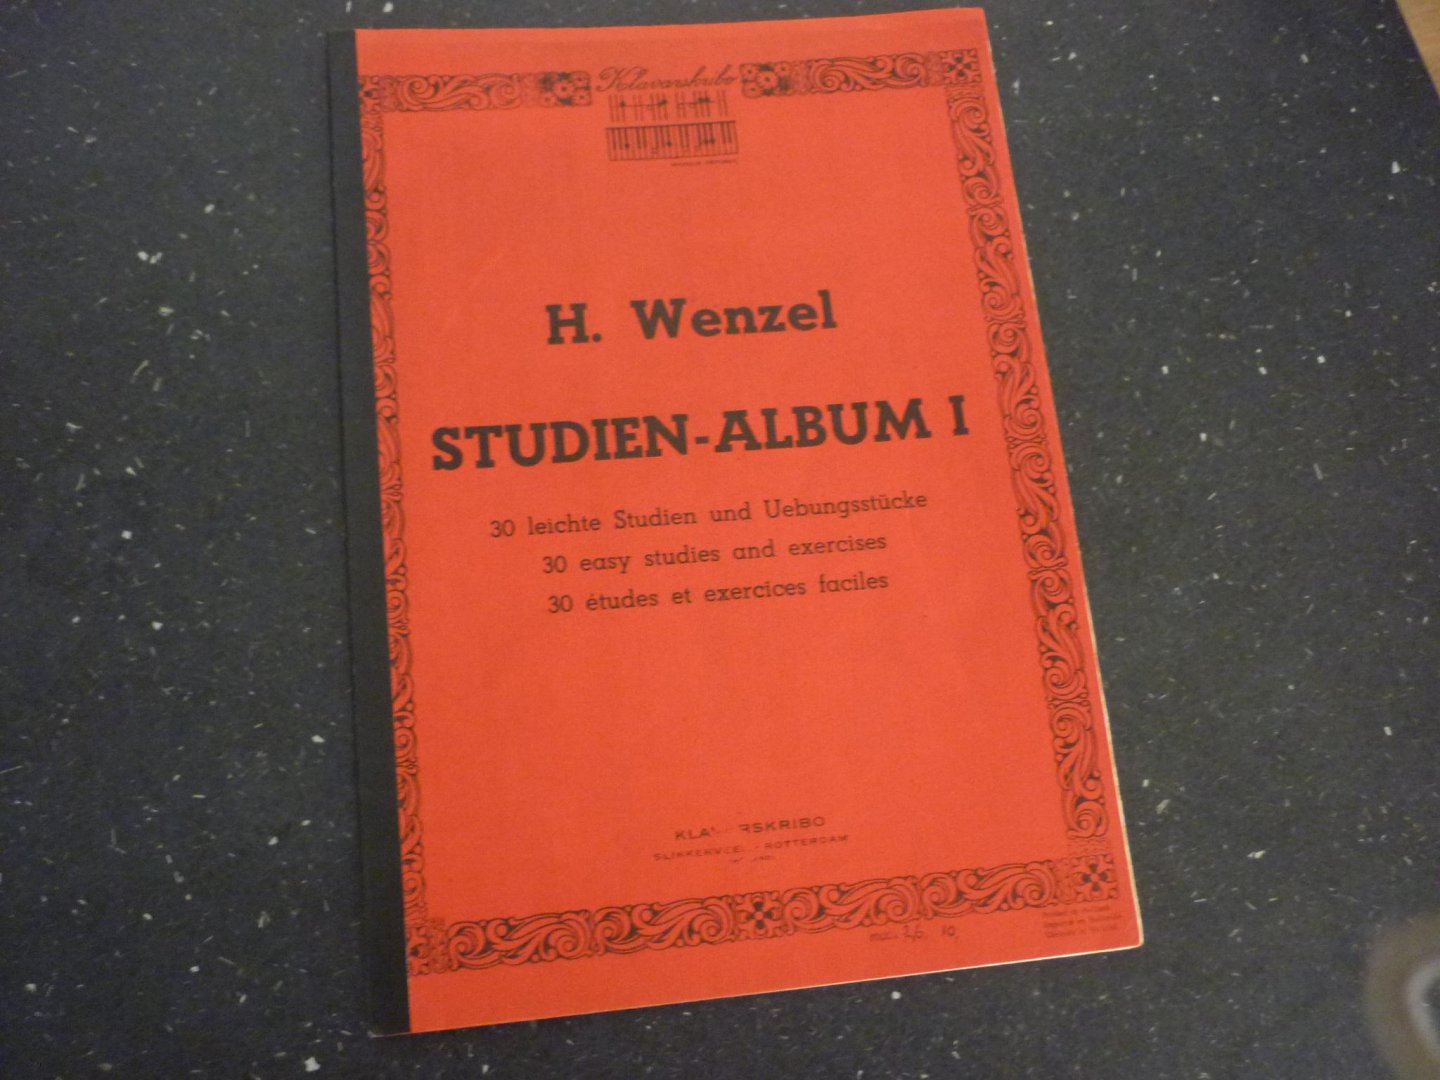 Wezel; Hermann - Studien - Album I / 30 leichte studien und ubungsstucke / Klavarskribo